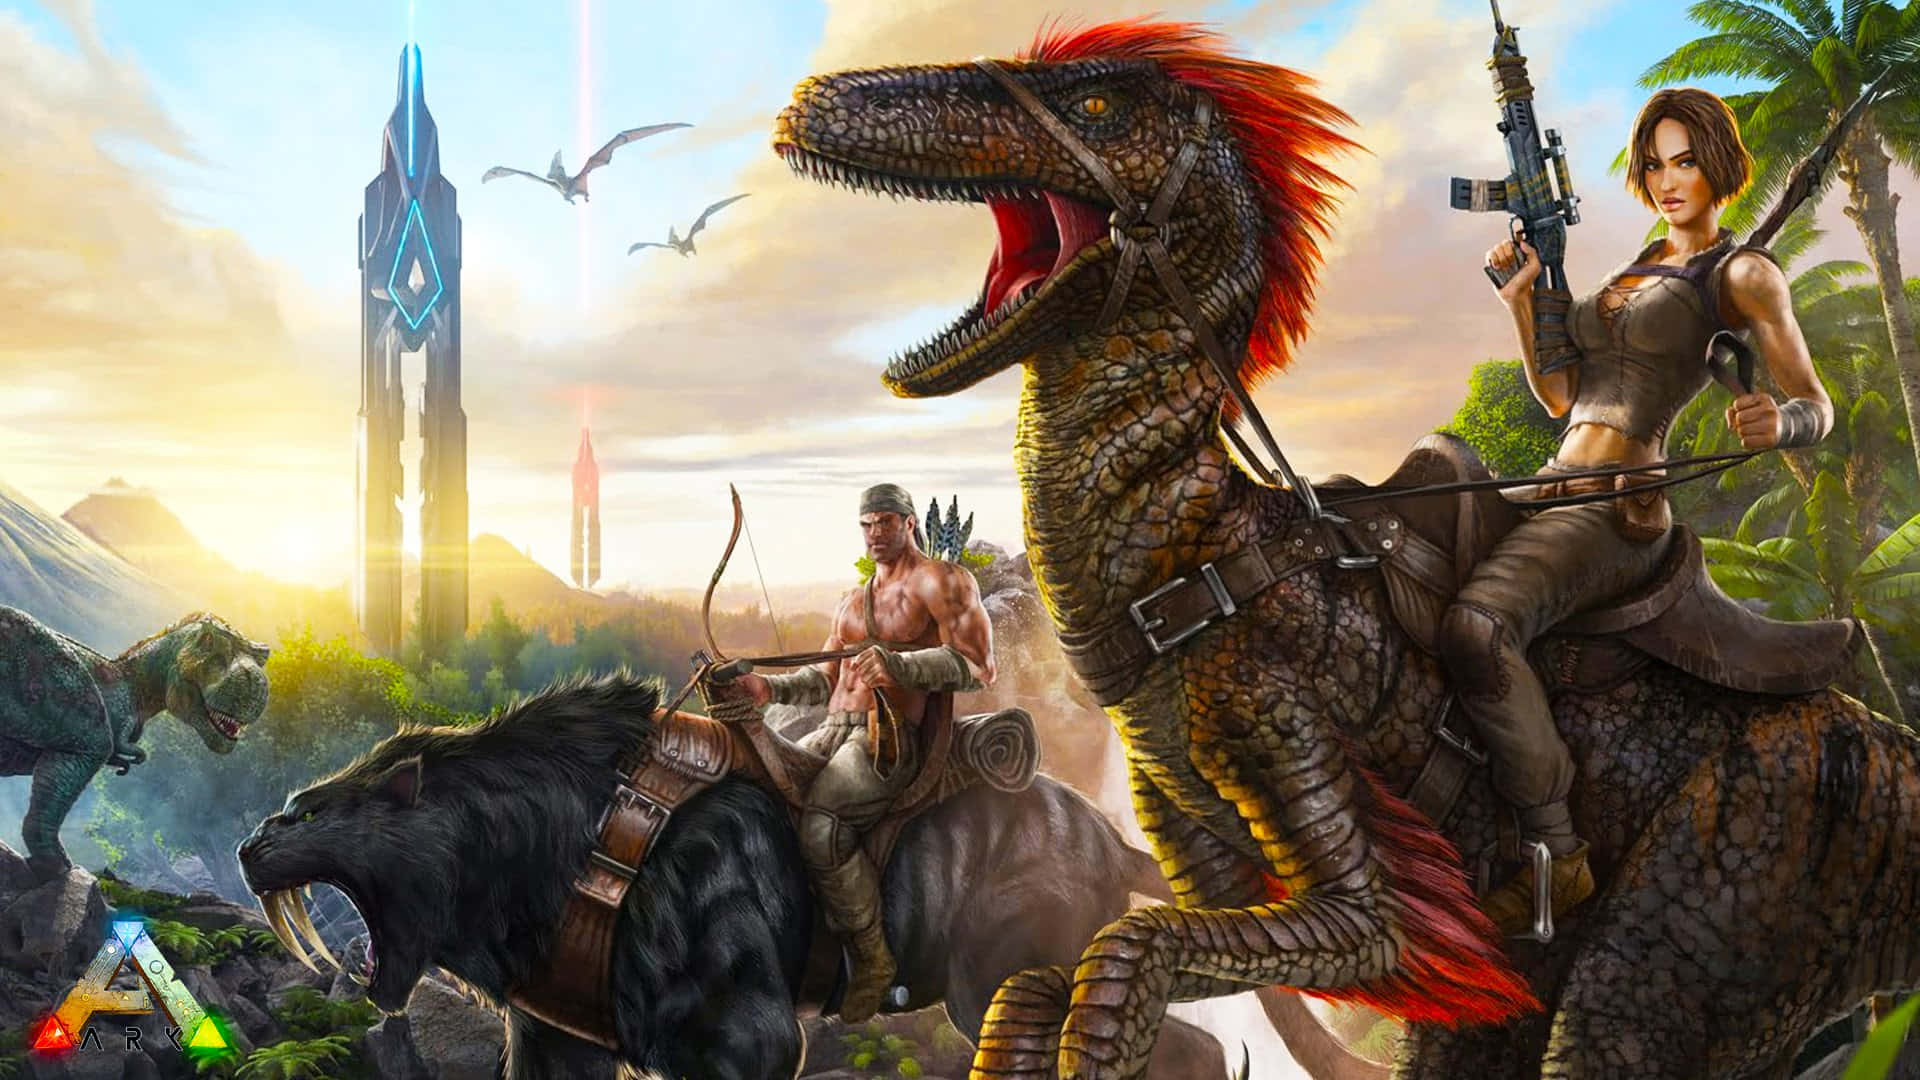 Einefrau Und Ein Mann Reiten Auf Dinosauriern In Einem Spiel. Wallpaper